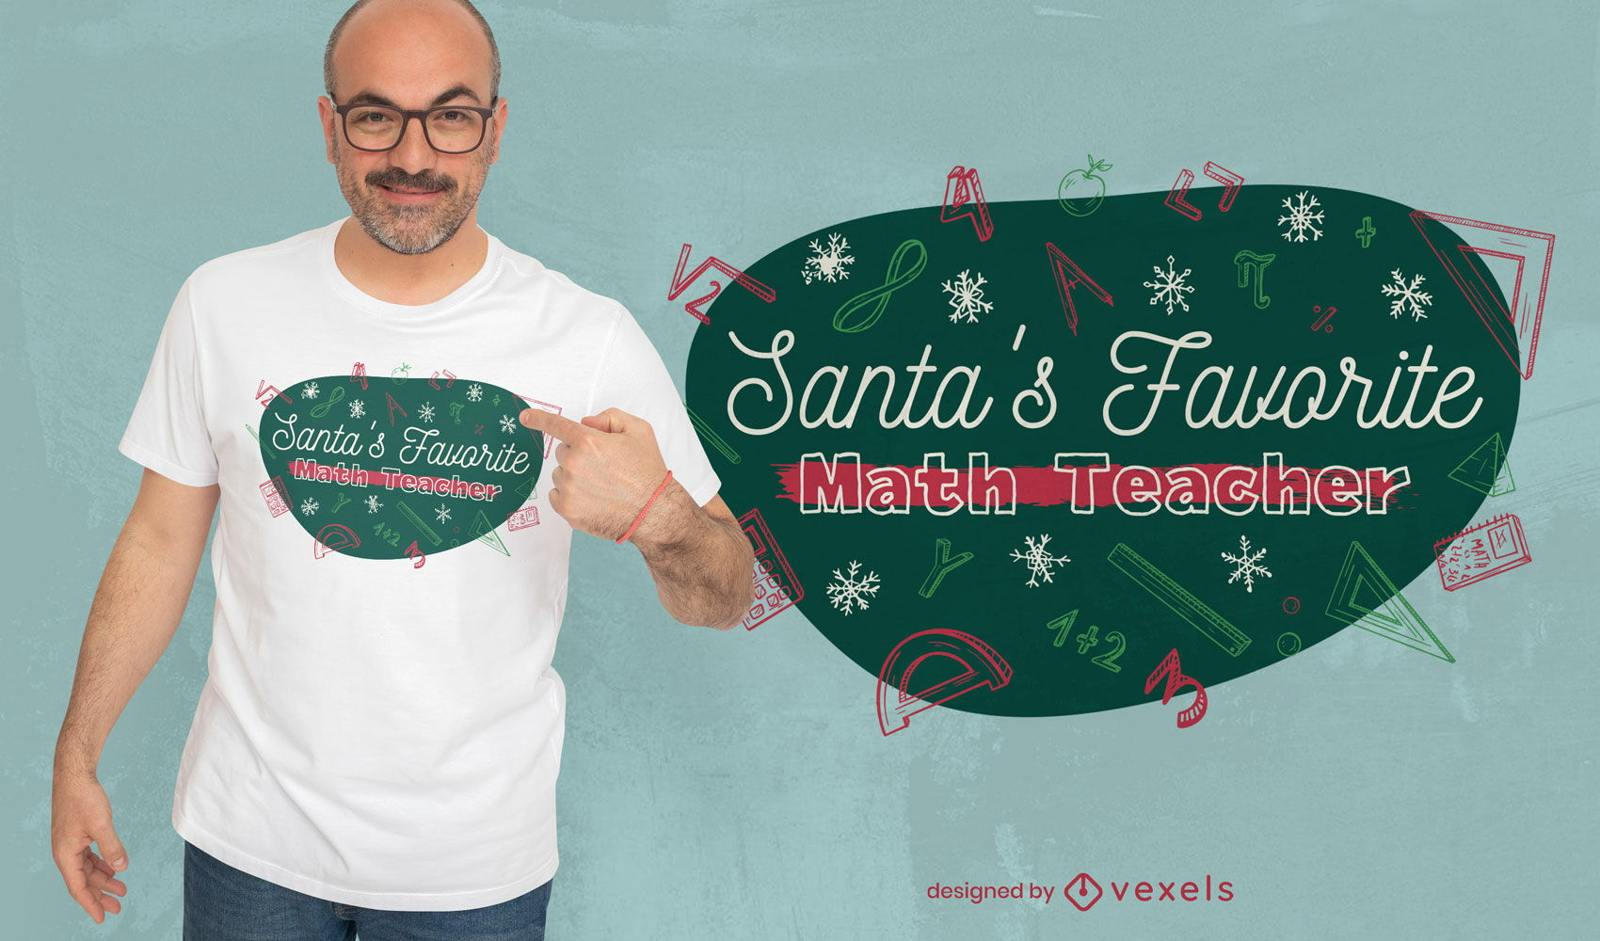 Diseño de camiseta navideña del maestro de matemáticas favorito de Papá Noel